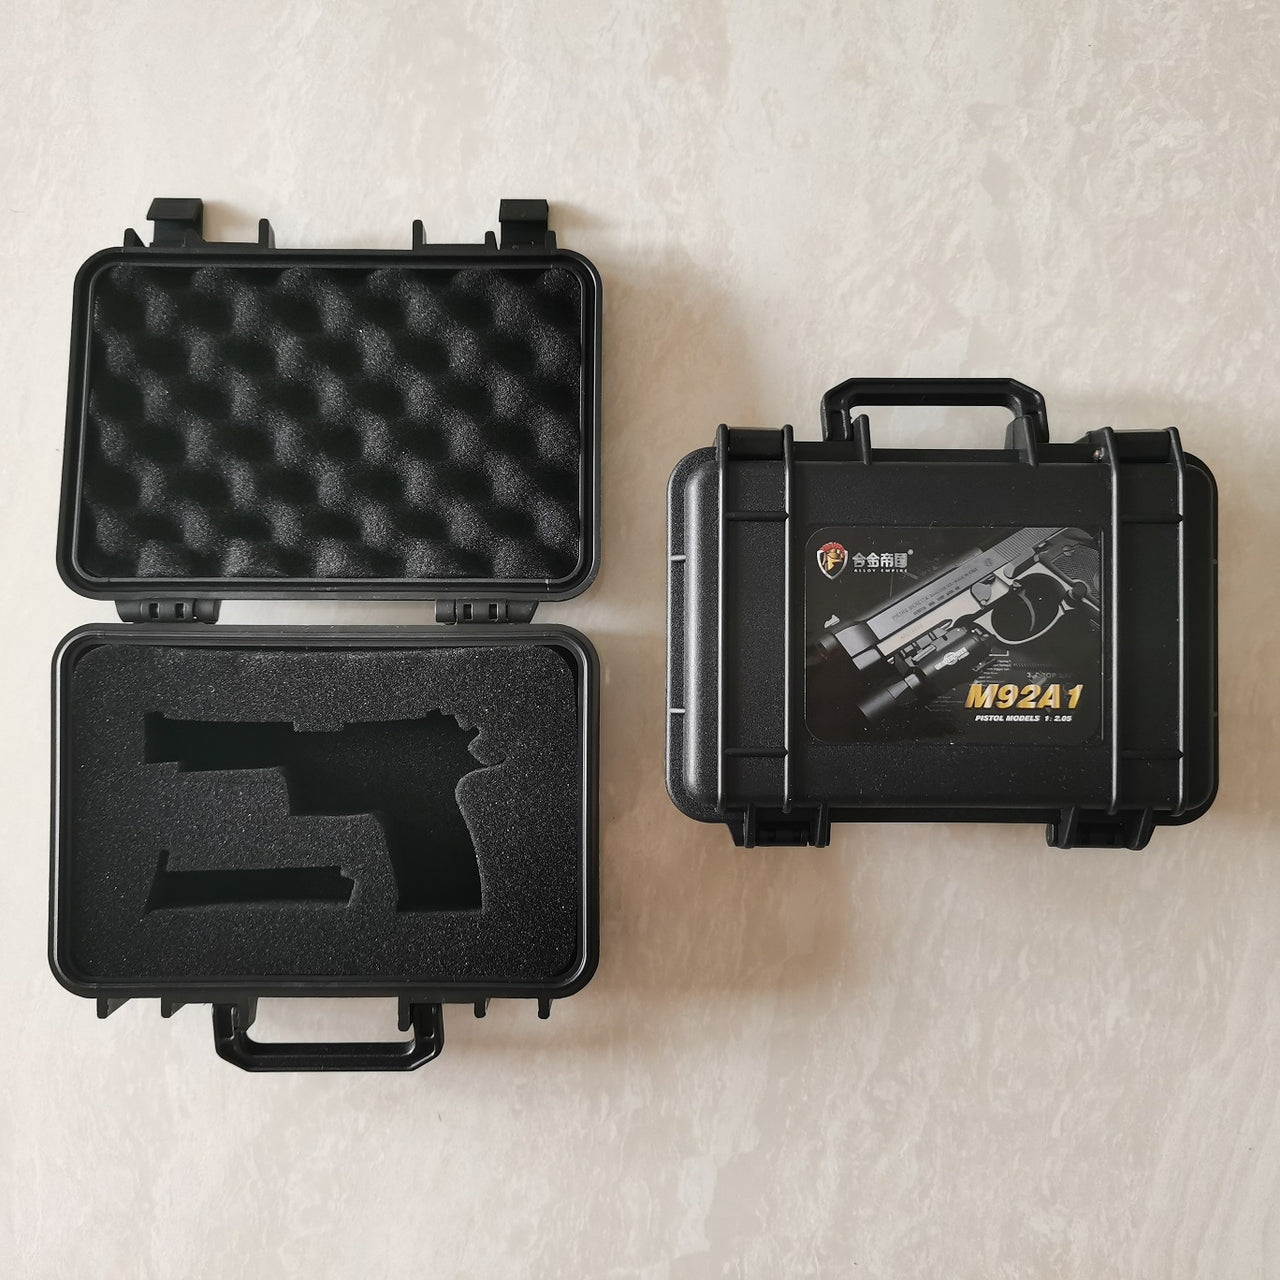 Alloy Empire Mini Beretta M92a1 Toy